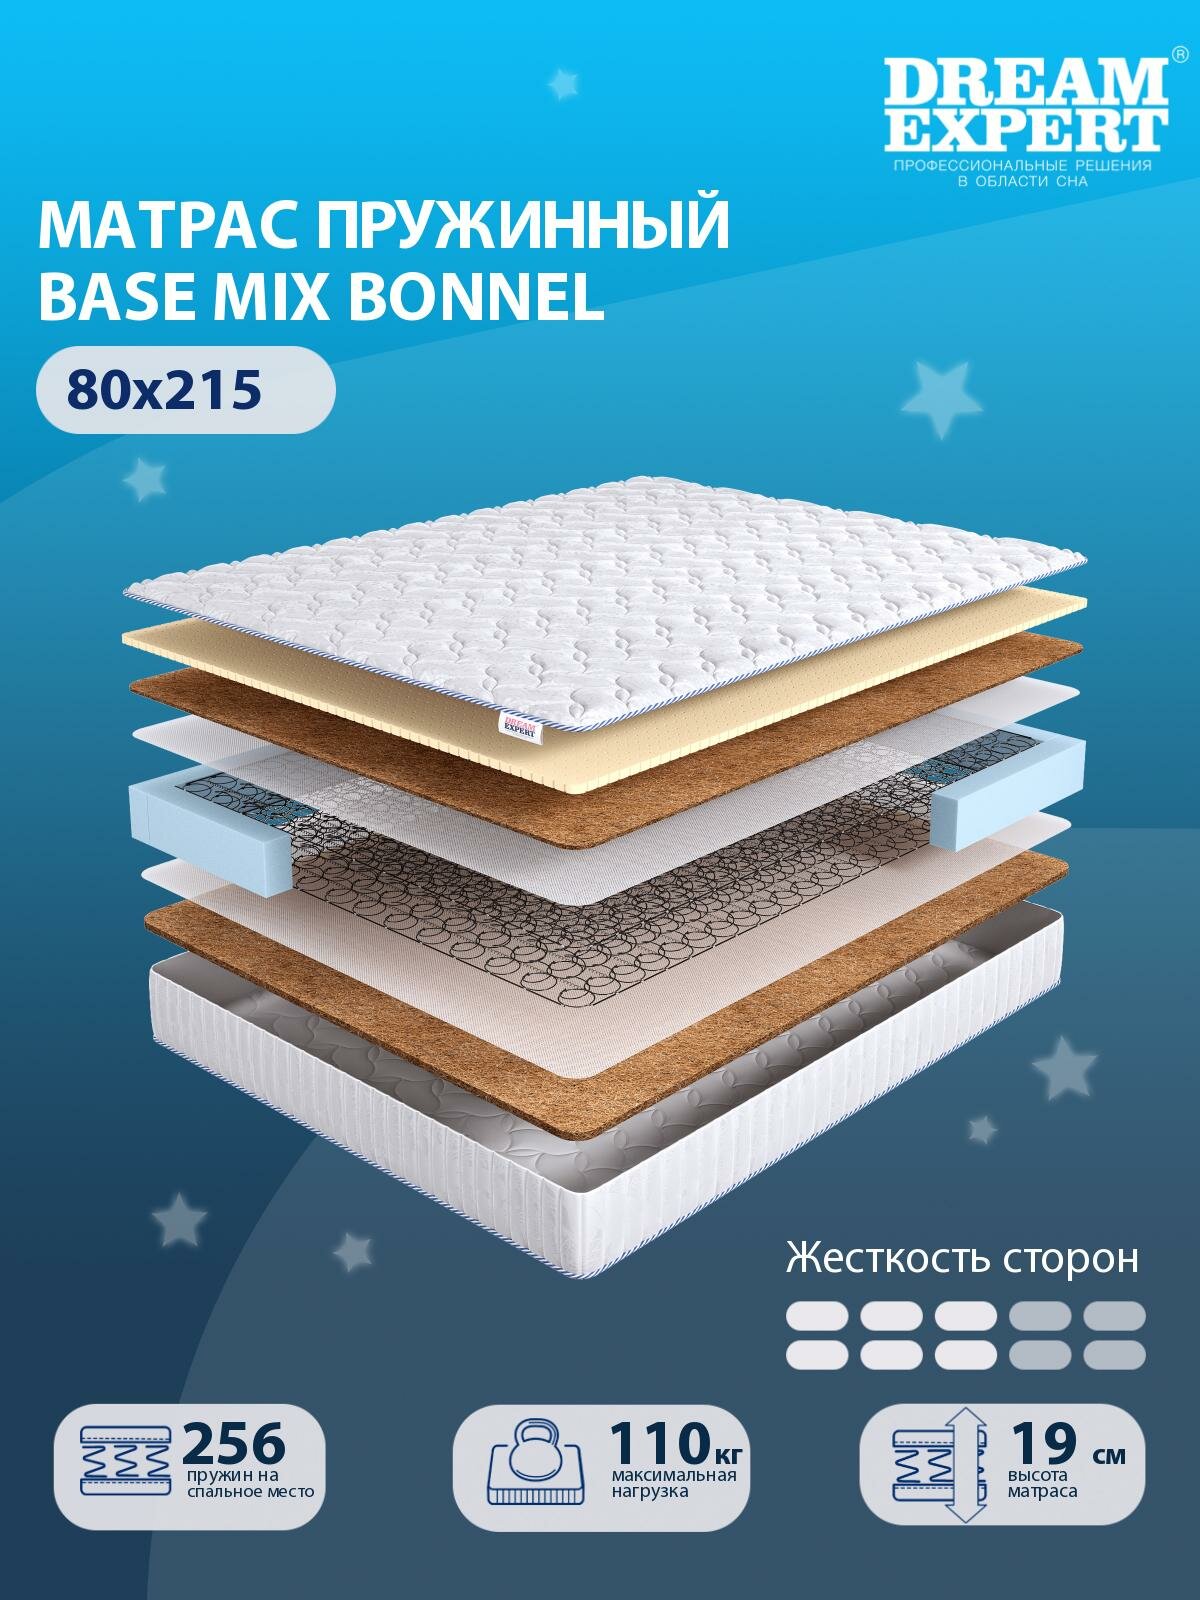 Матрас DreamExpert Base Mix Bonnel средней жесткости, односпальный, зависимый пружинный блок, на кровать 80x215